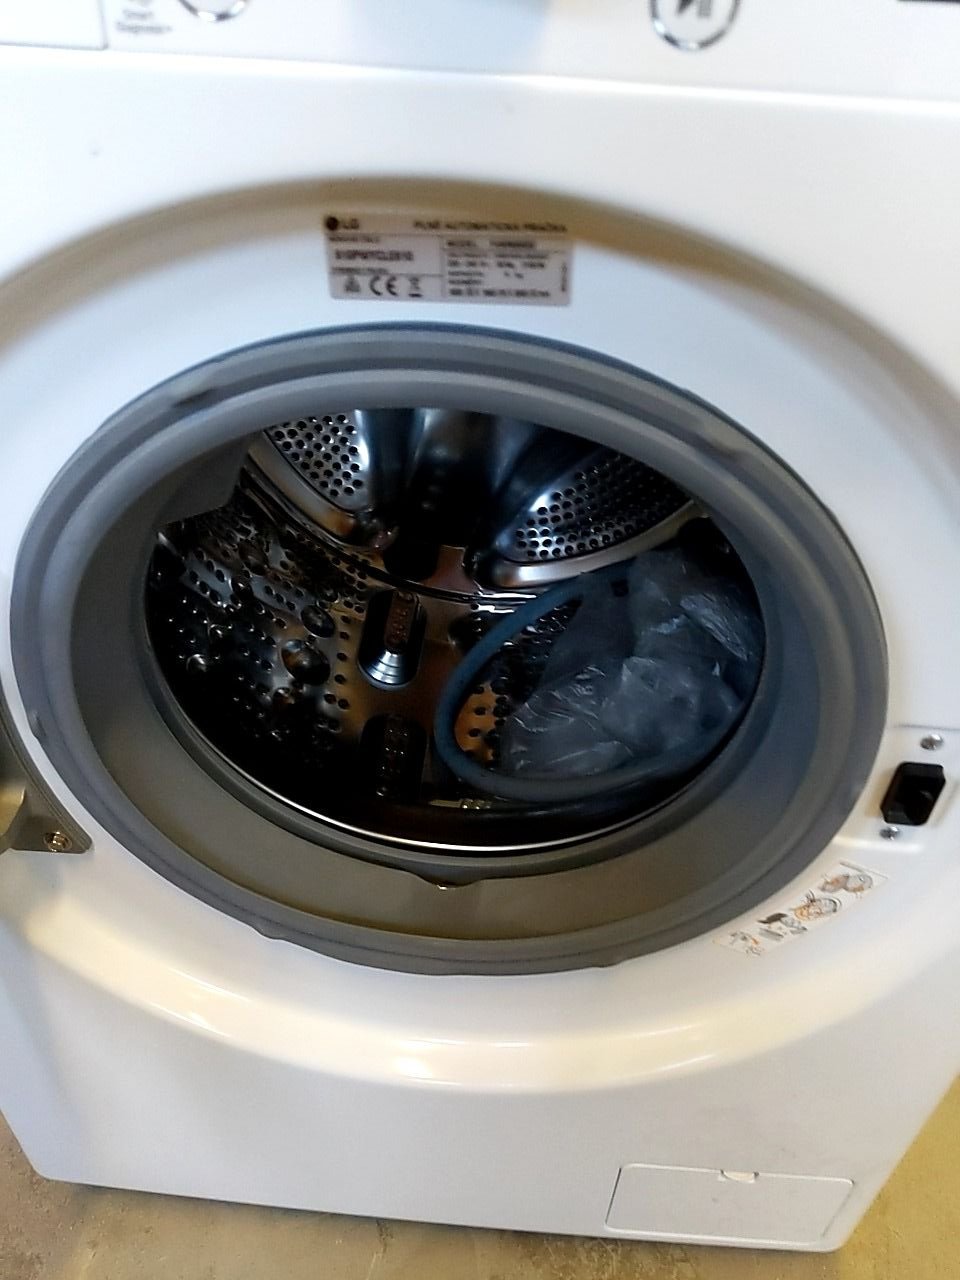 Pračka s předním plněním LG F4WN909S2